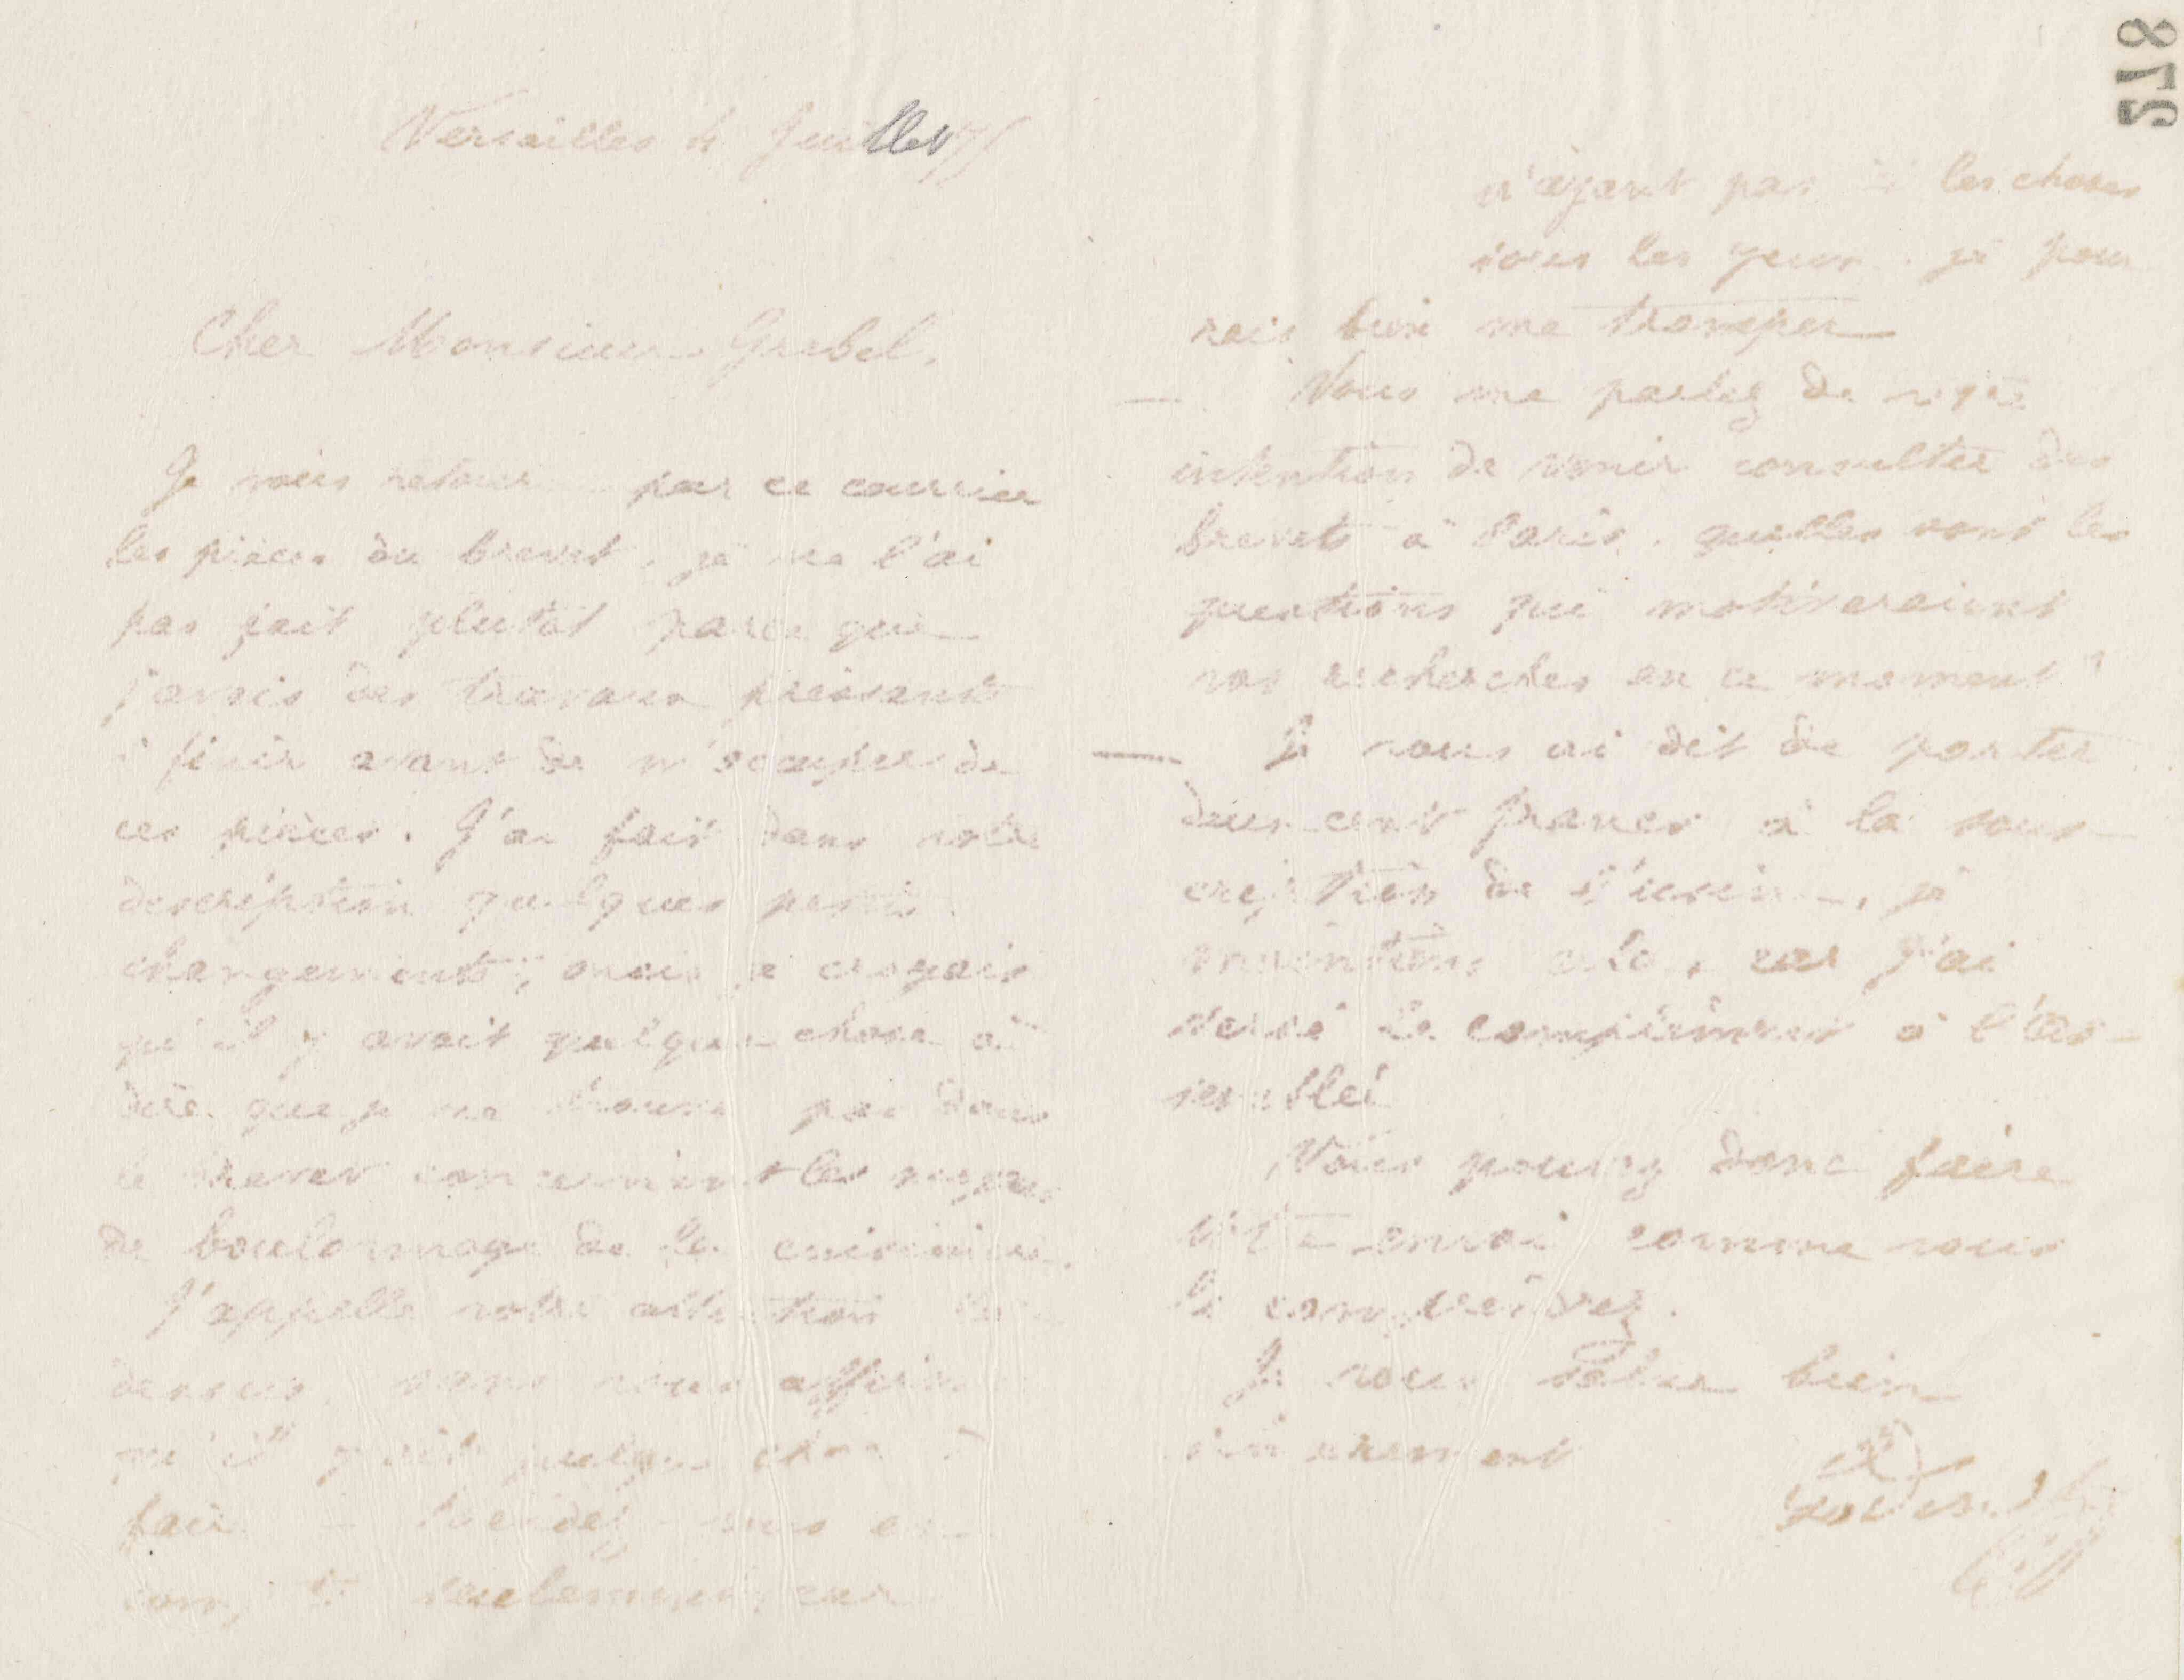 Jean-Baptiste André Godin à Alphonse Grebel, 4 juillet 1875